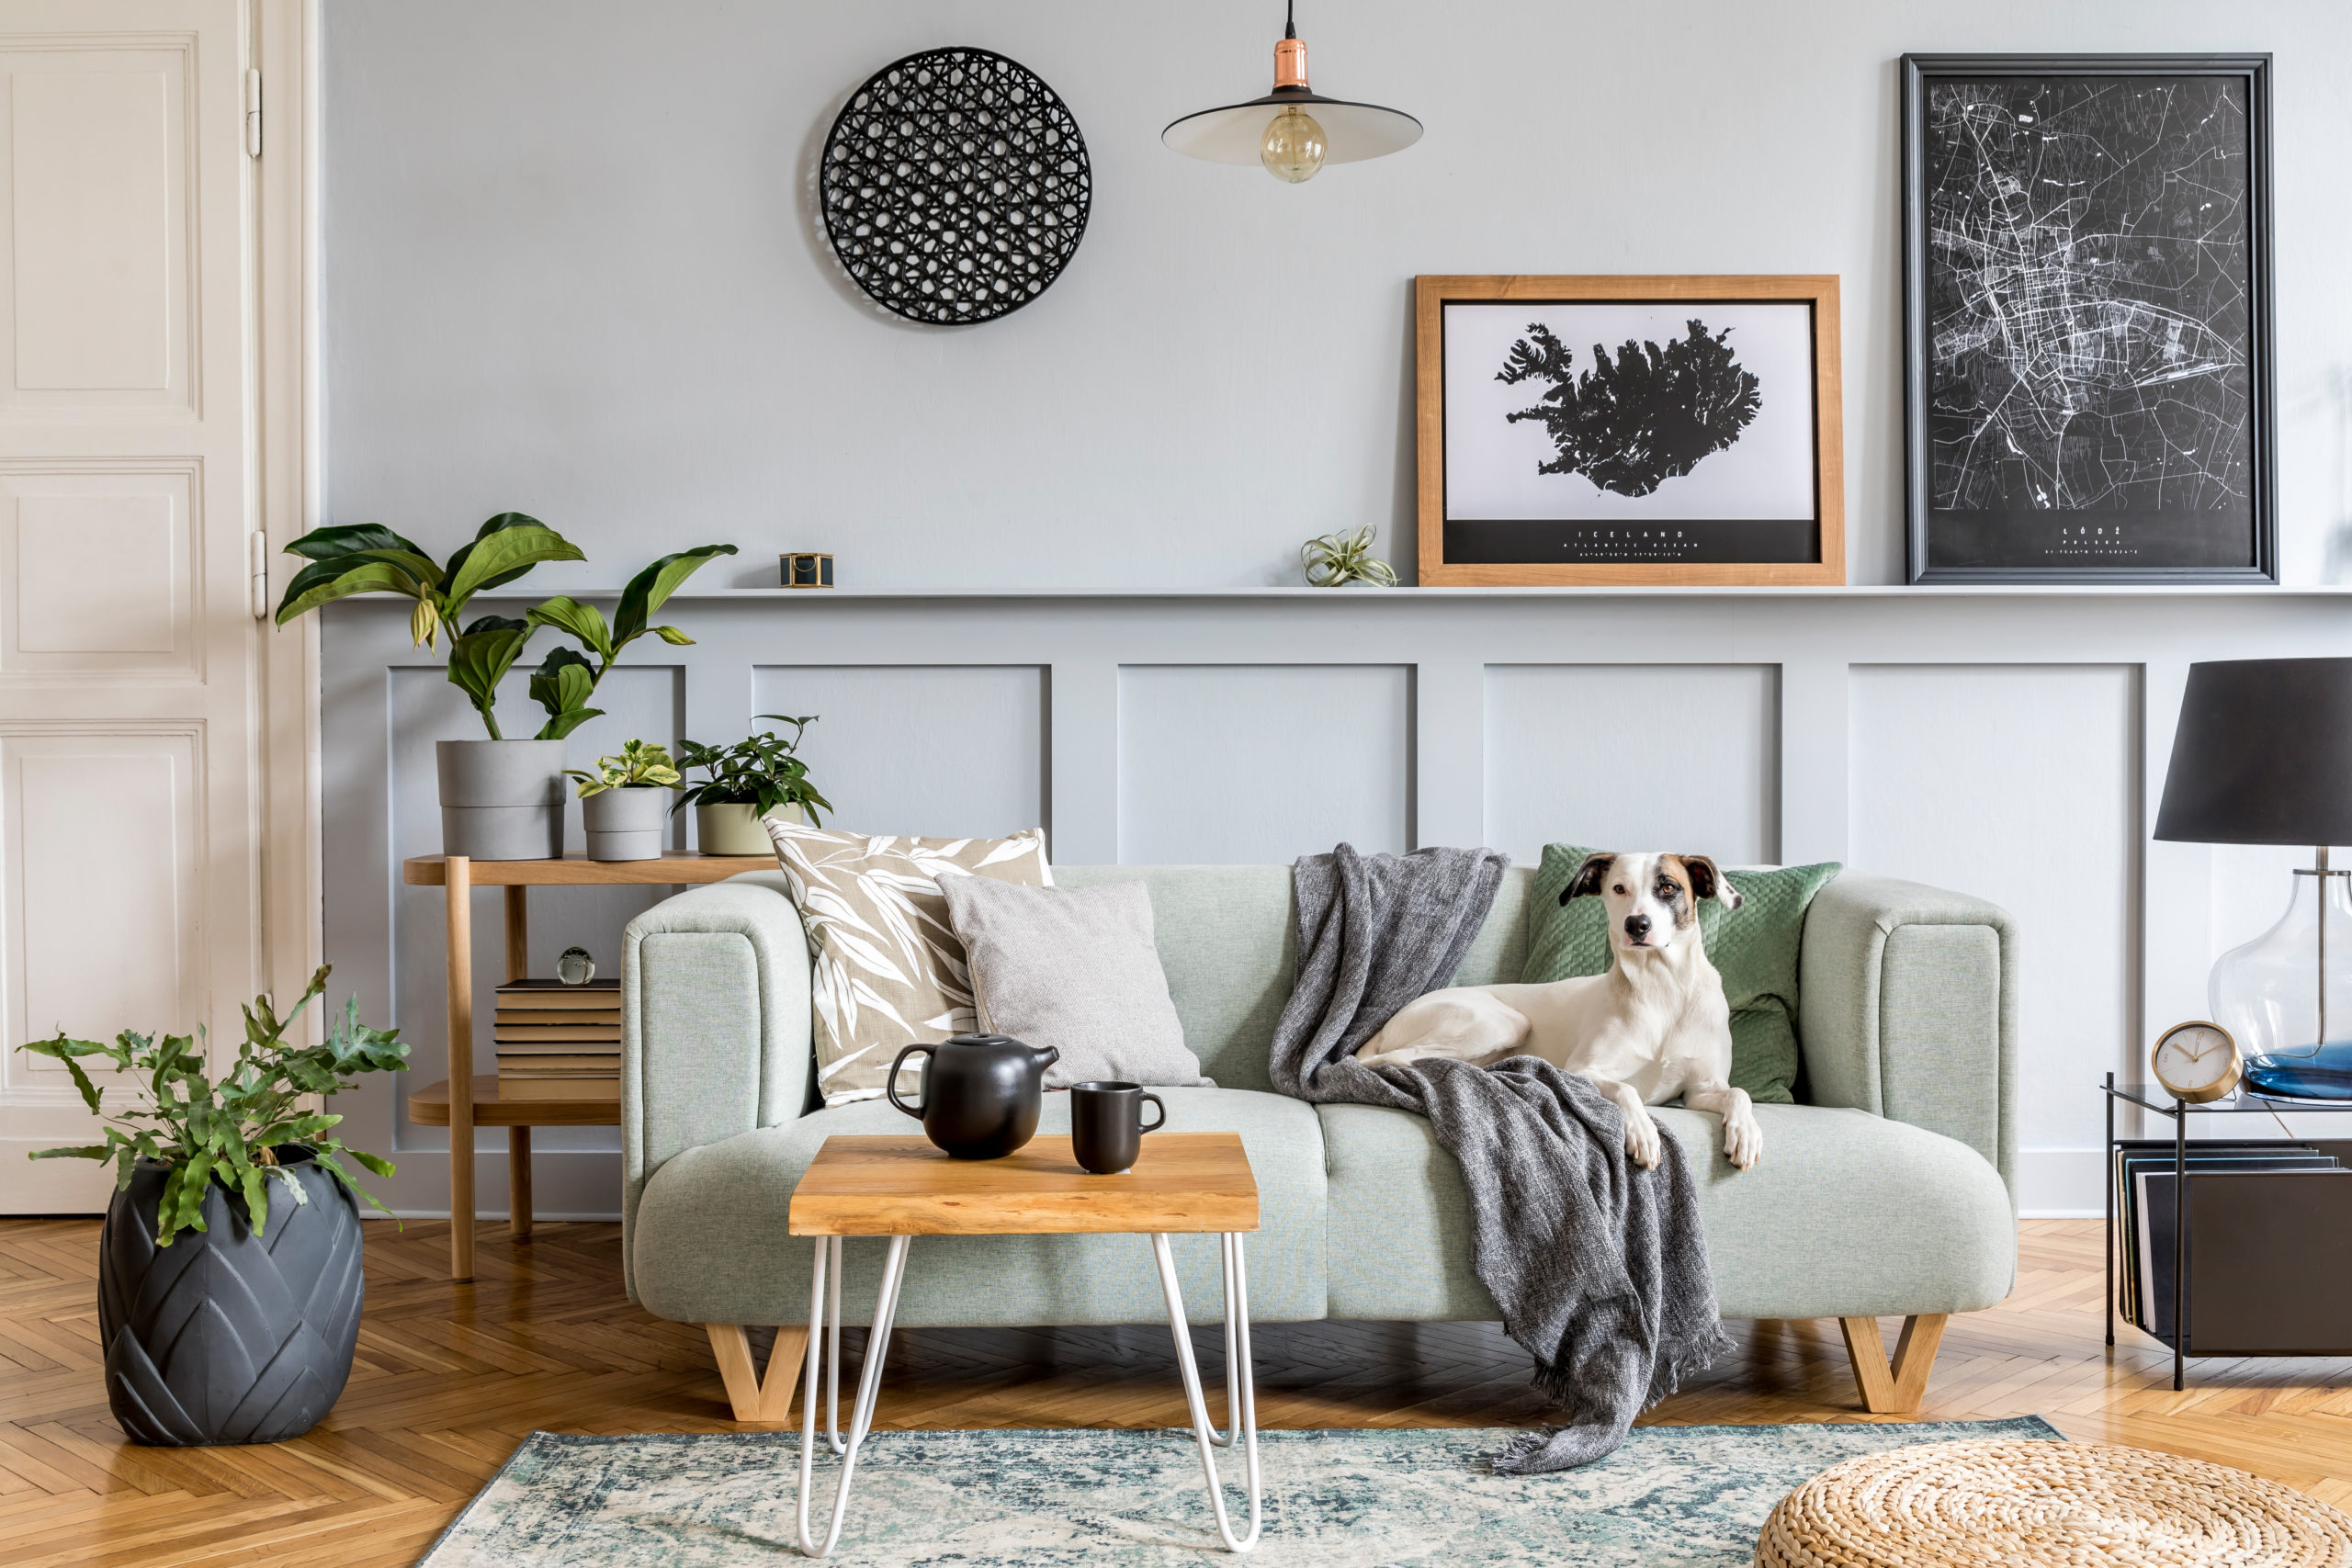 Modern nane kanepe, ahşap konsol, mobilya, bitki, poster çerçevesi, pdecoration, ev dekorasyonunda zarif aksesuarlar ve kanepede yatan köpek ile oturma odasının şık iç tasarımı.